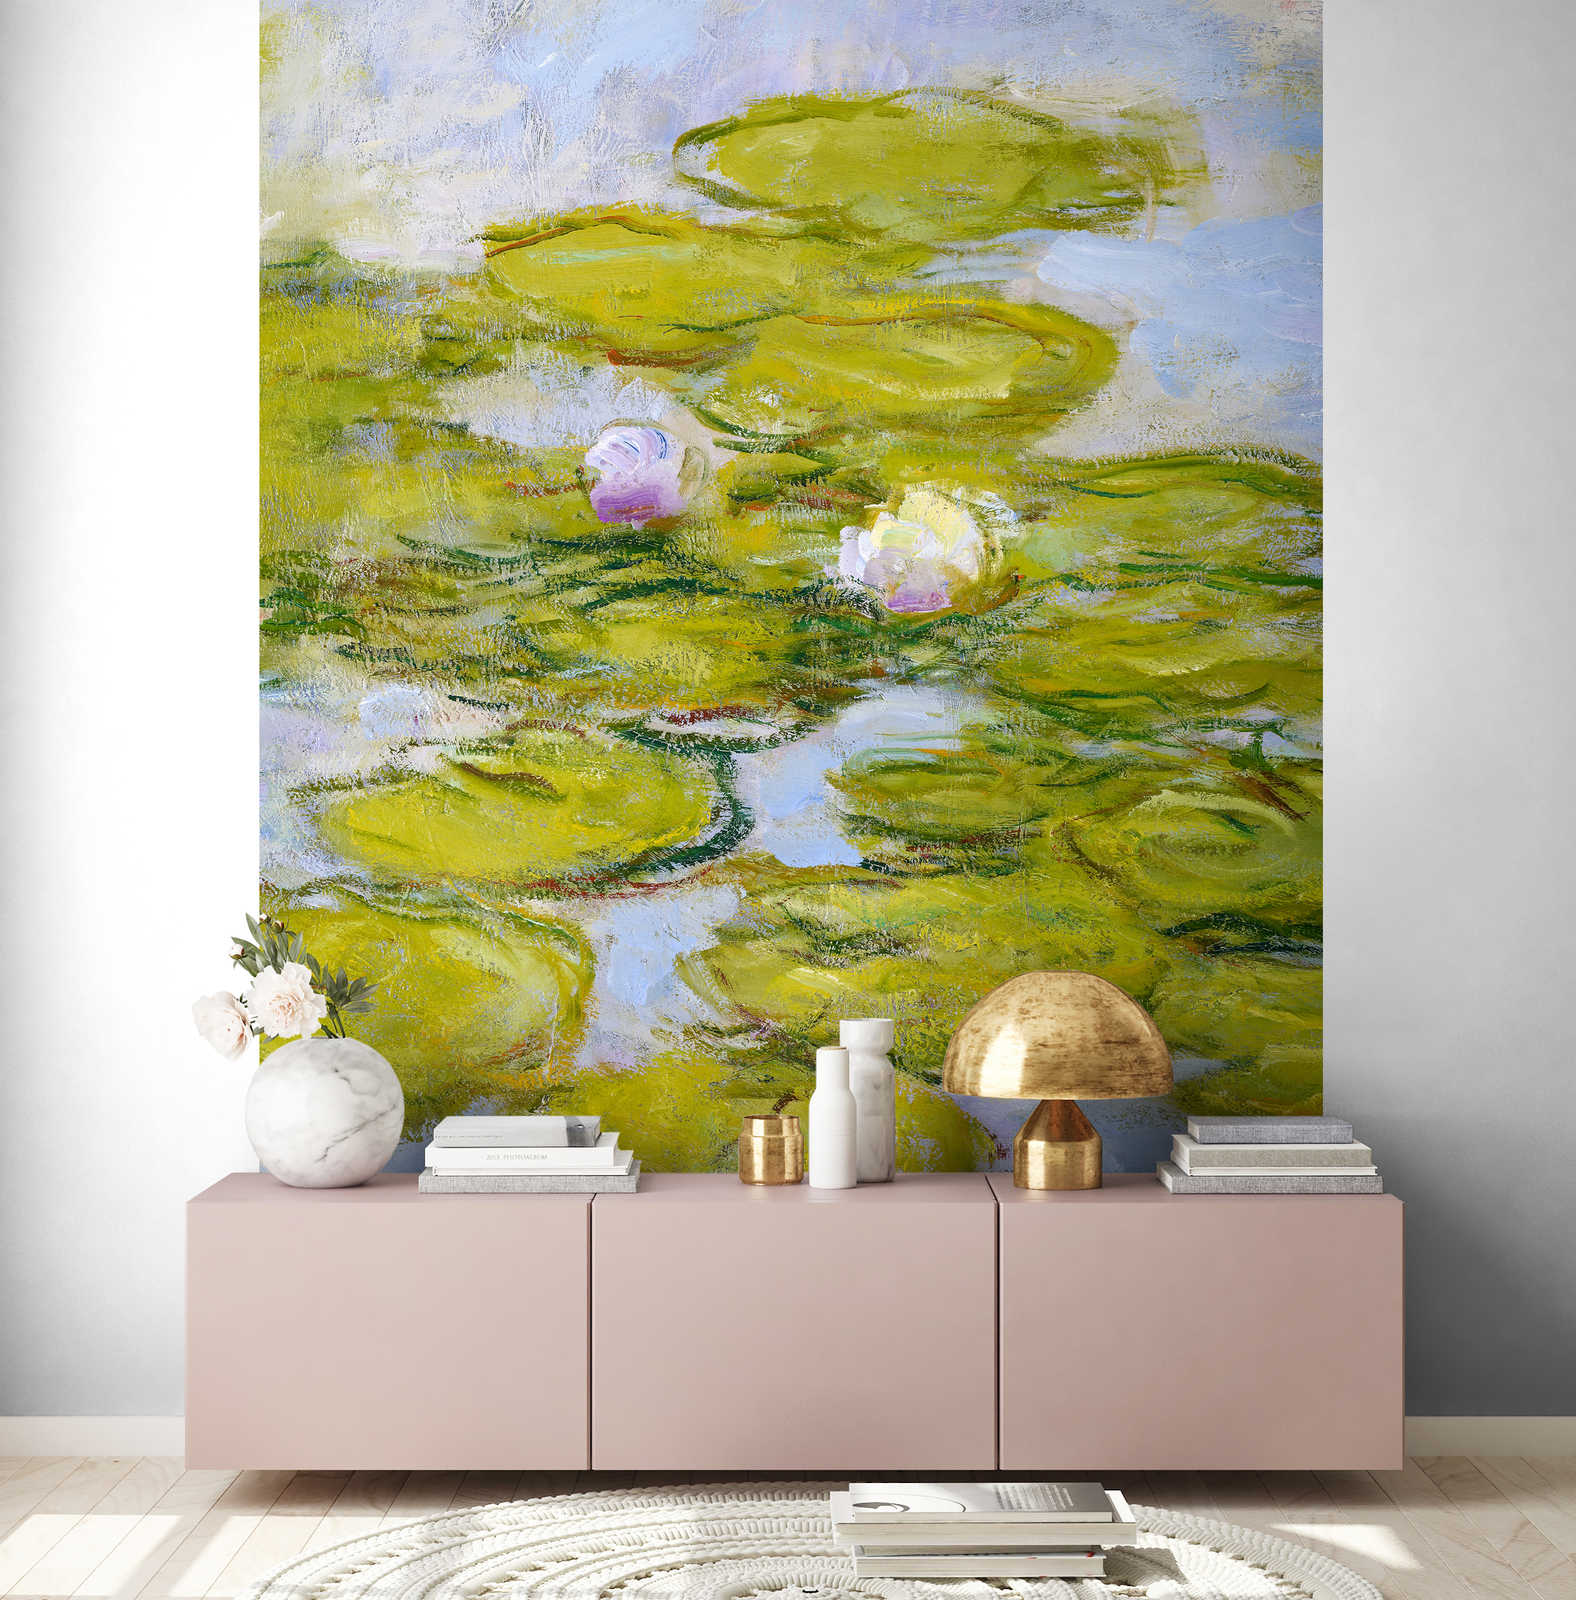             Papier peint panoramique "Nymphes" de Claude Monet
        